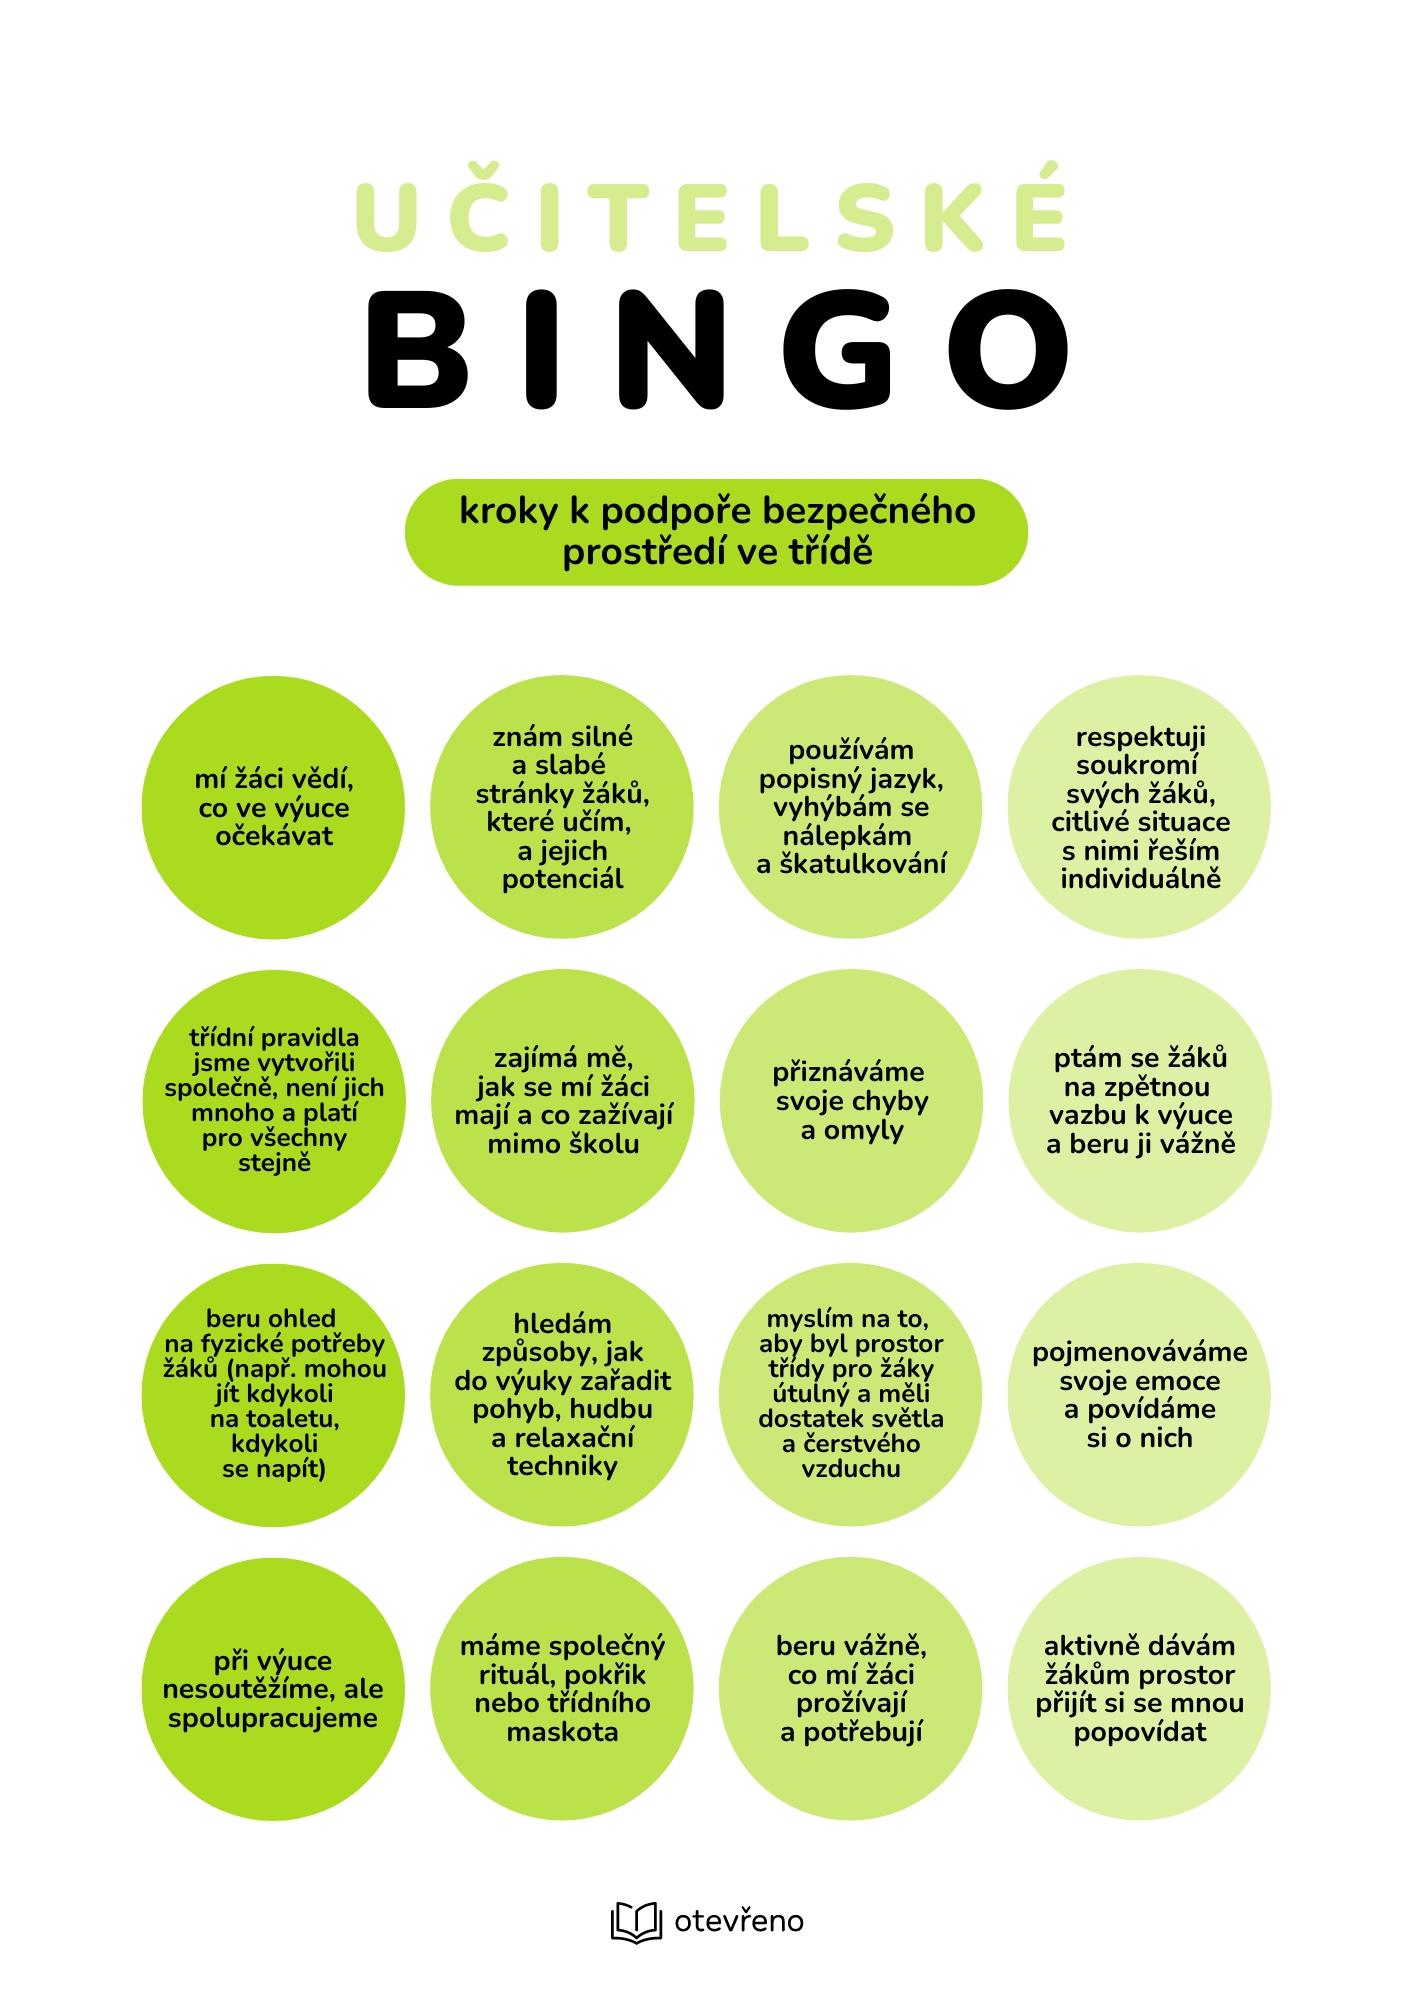 BO Bingo vertical - Učitelské BINGO (Otevřeno) - wellbeingveskole.cz